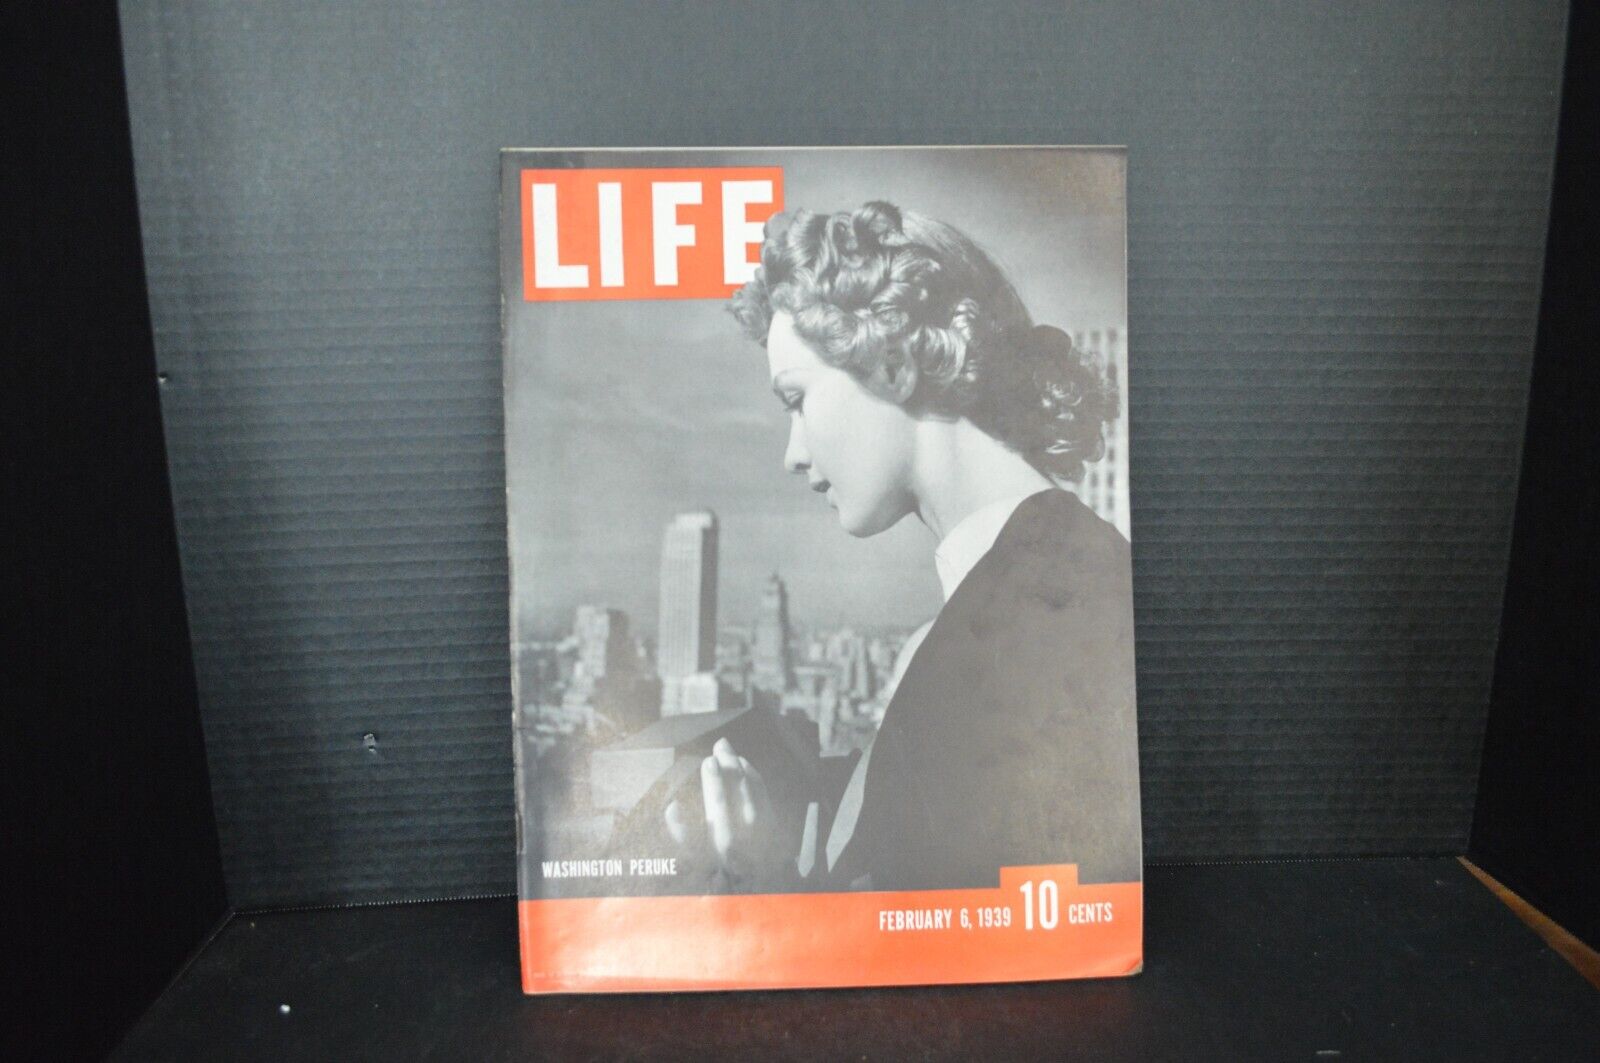 Life Magazine February 6 1939 Washington Peruke